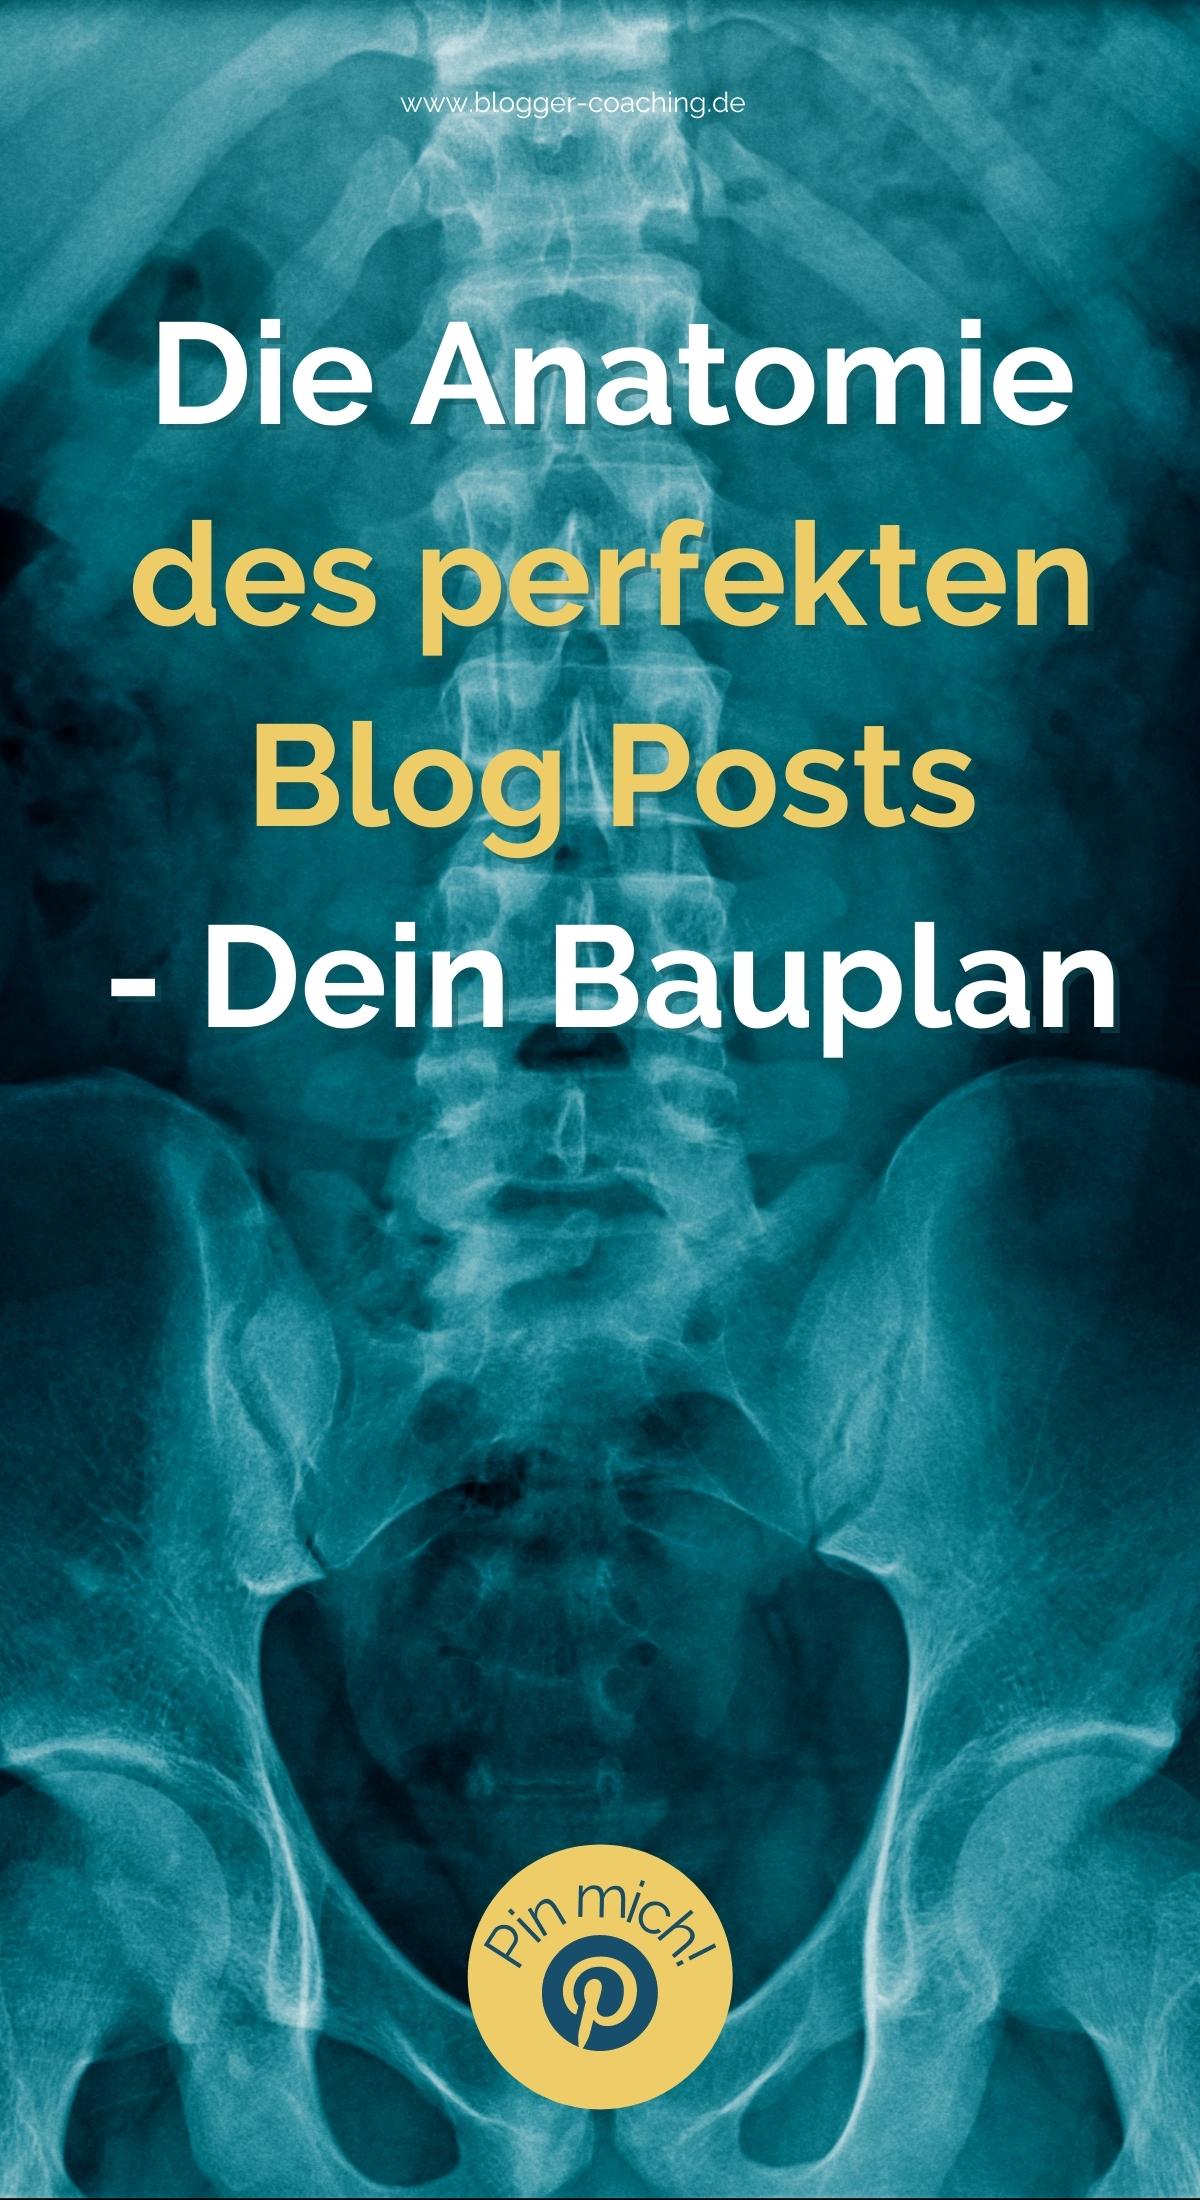 Die Anatomie des perfekten Blog Posts - Der ultimative Bauplan | Business Blogger Coaching Filiz Odenthal